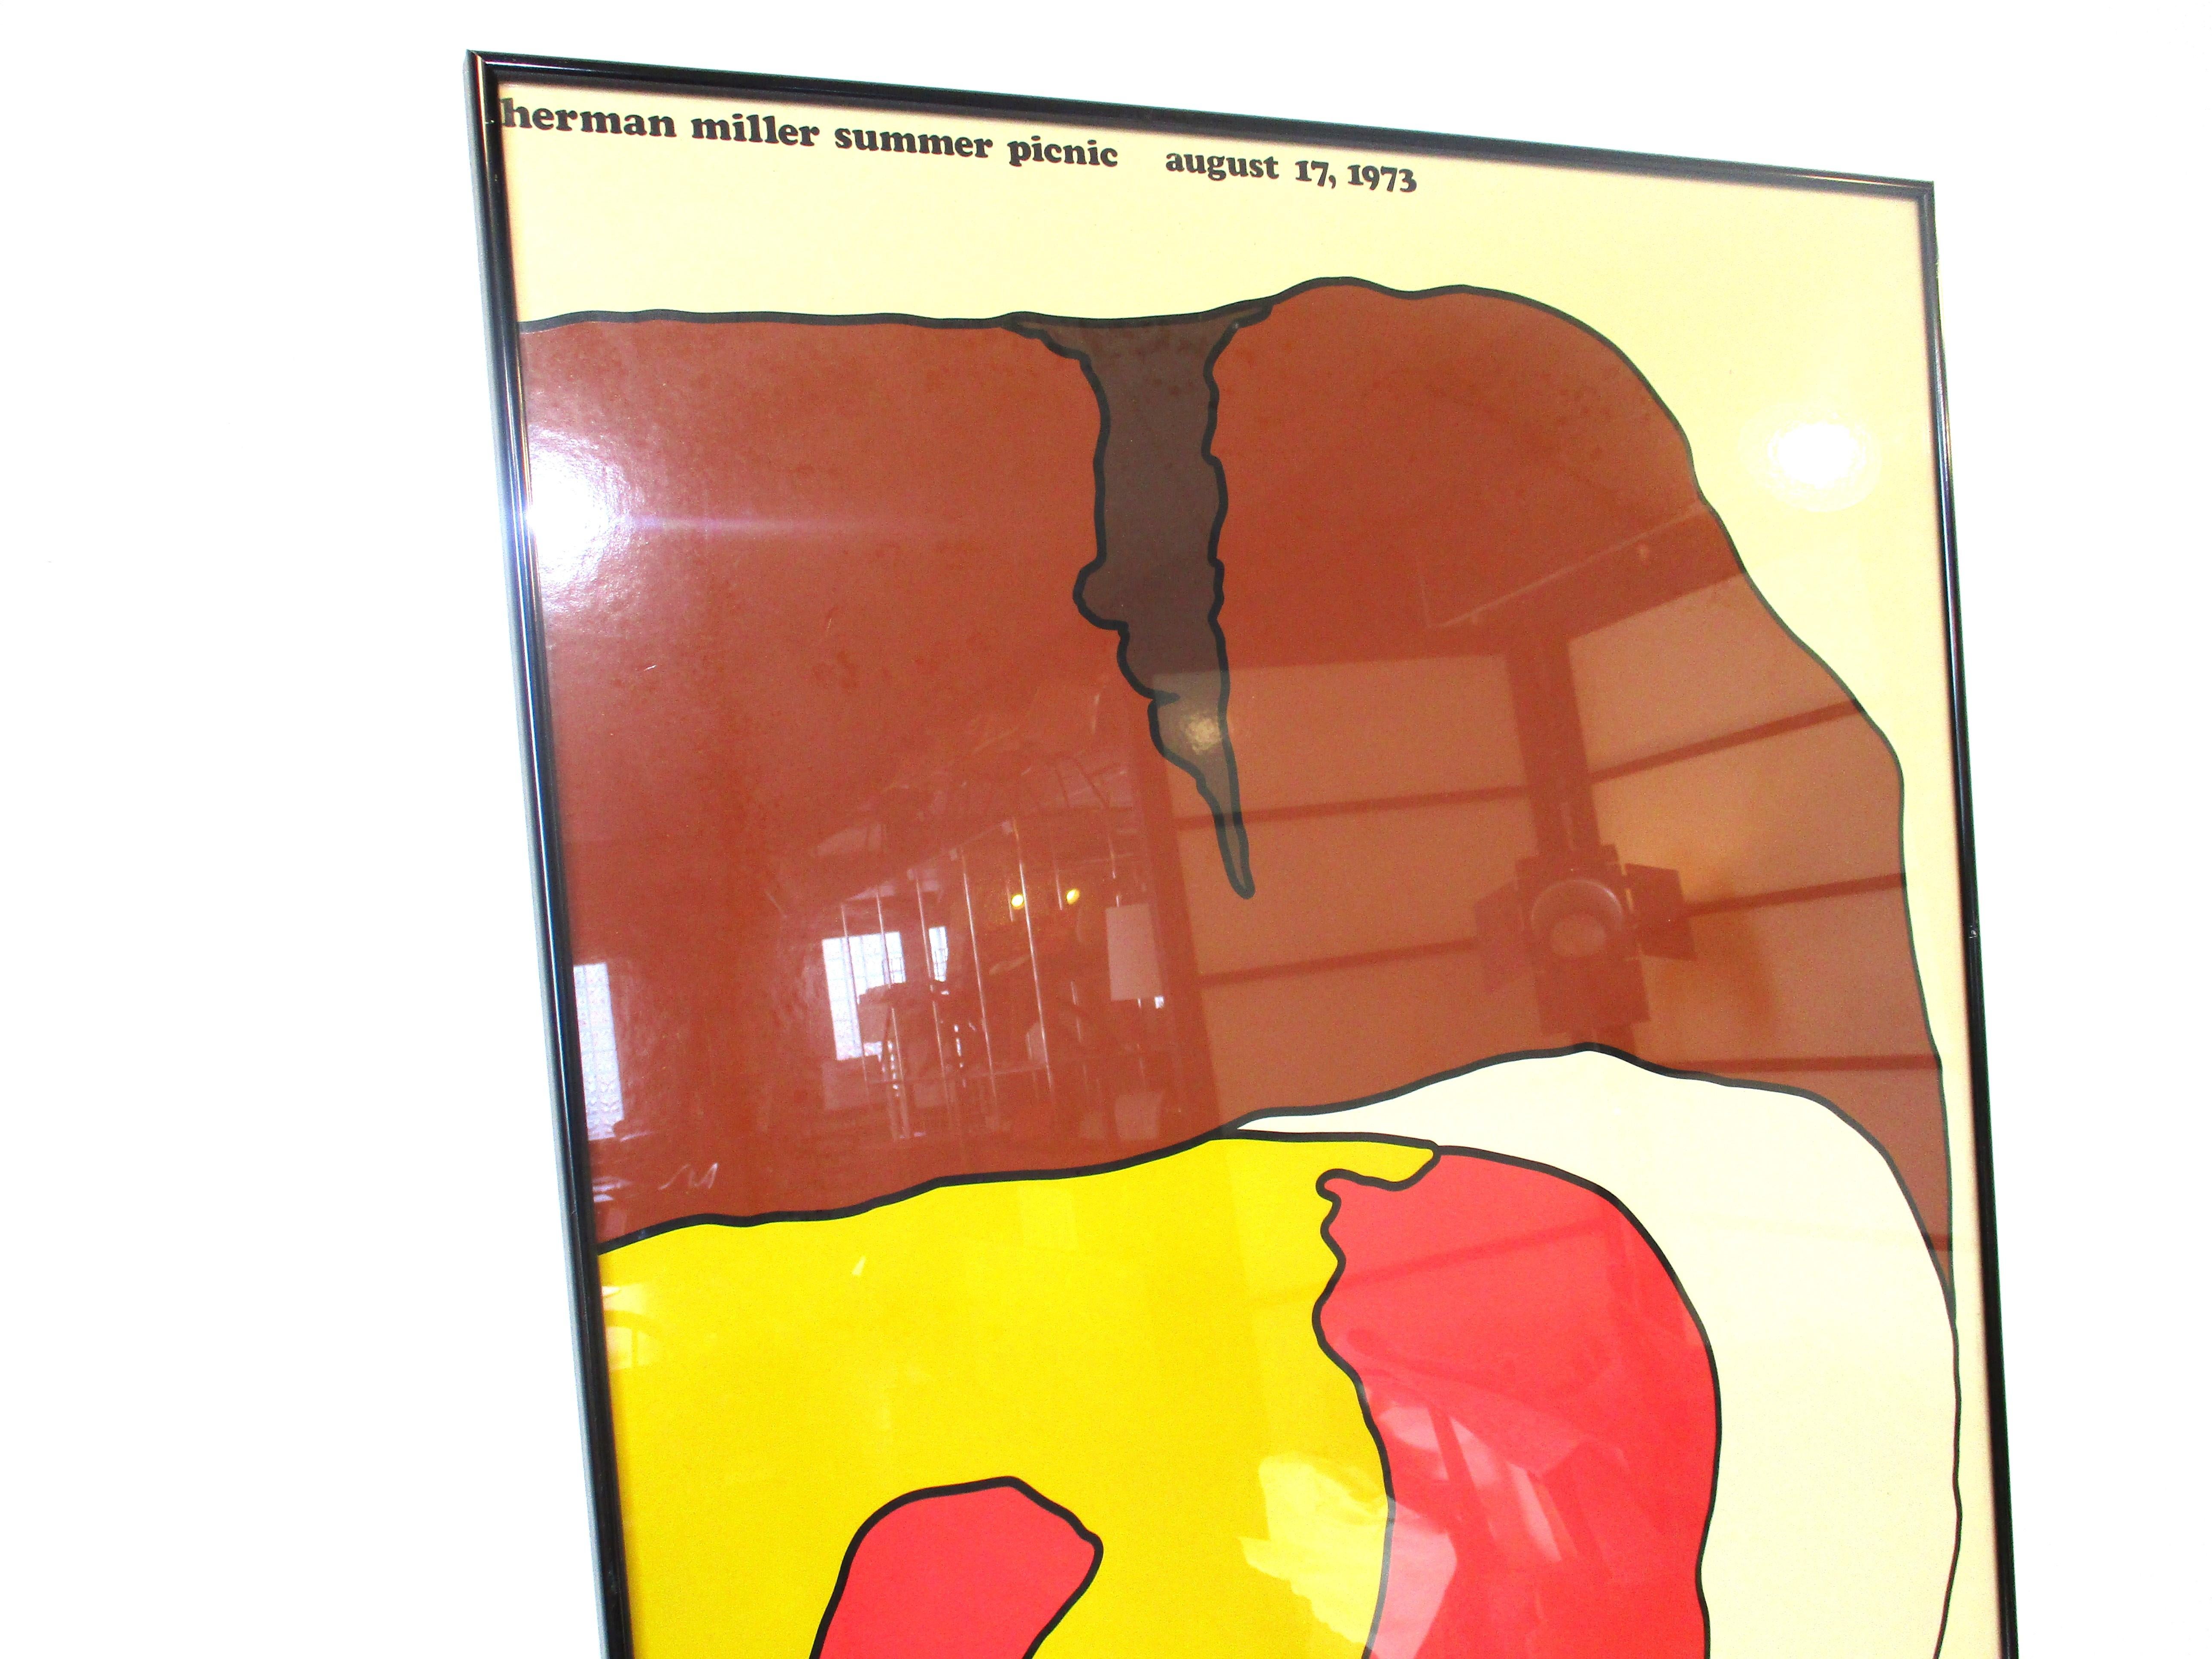 Ein sehr sammelwürdiges, farbenfrohes Plakat im Pop-Art-Stil vom jährlichen Herman Miller Sommerpicknick. Gedruckt auf einem glatten Papier, das einen Hamburger mit allen Toppings in einem schwarzen Metallrahmen zeigt, handelt es sich um eine